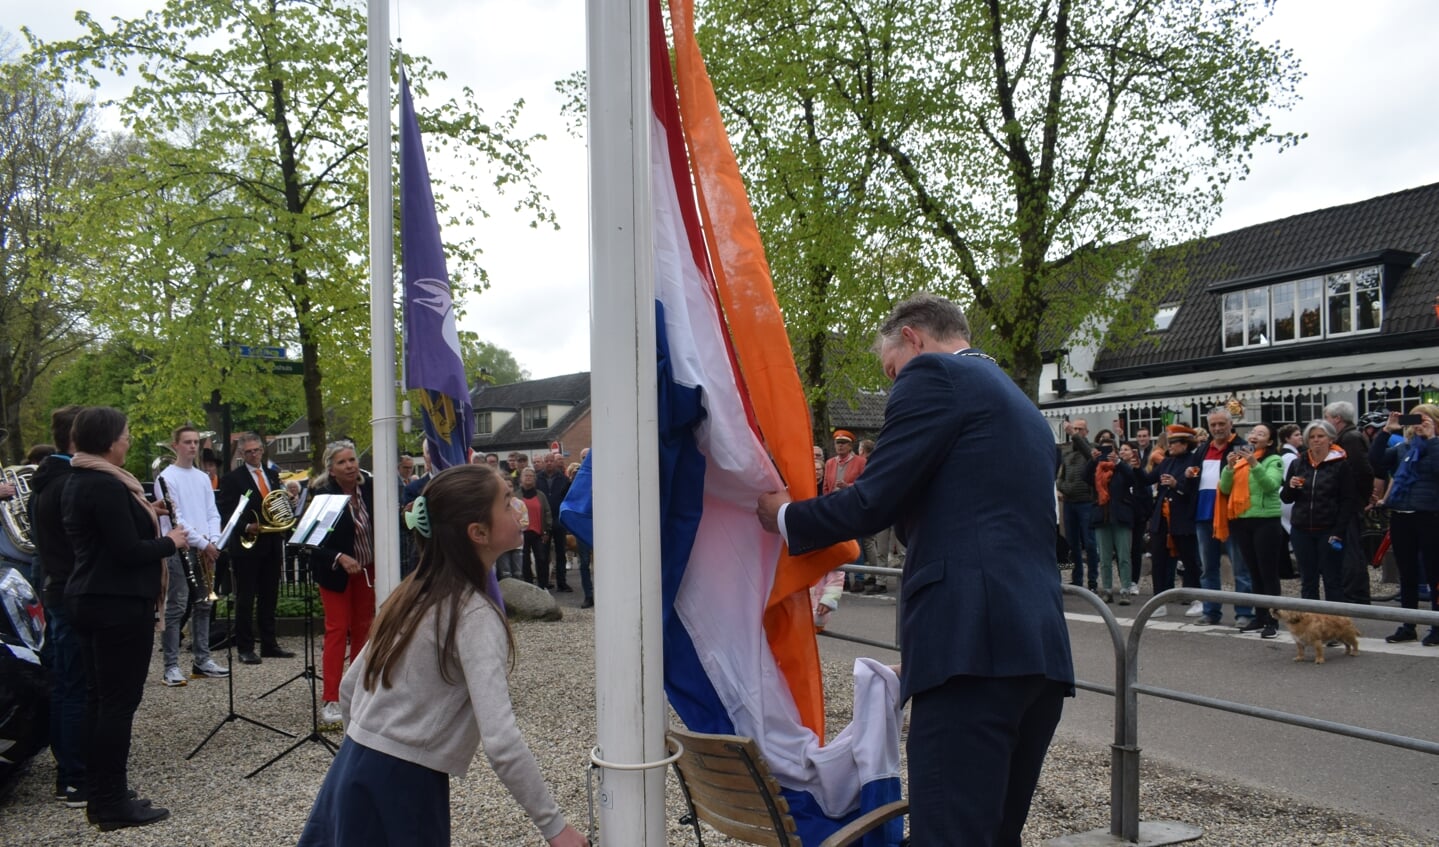 Burgemeesters Feline van der Velden en Mark Röell hijsen de Nederlandse vlag.